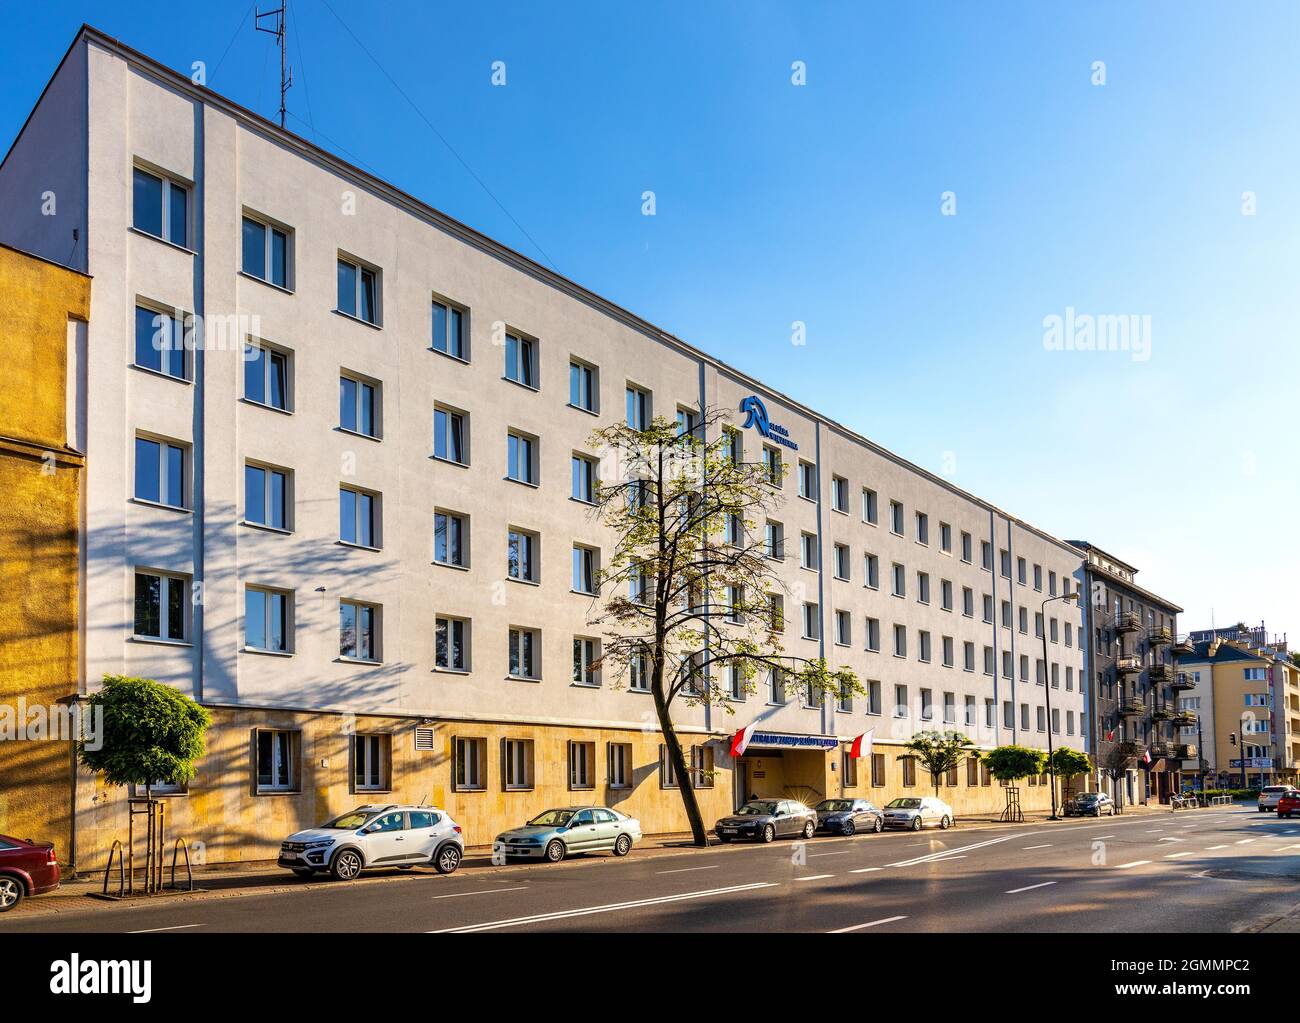 Varsovia, Polonia - 12 de agosto de 2021: Sluzba Wiezienna Prison Service - edificio de oficinas de la autoridad penitenciaria estatal en la calle Rakowiecka en Mokotow distr Foto de stock